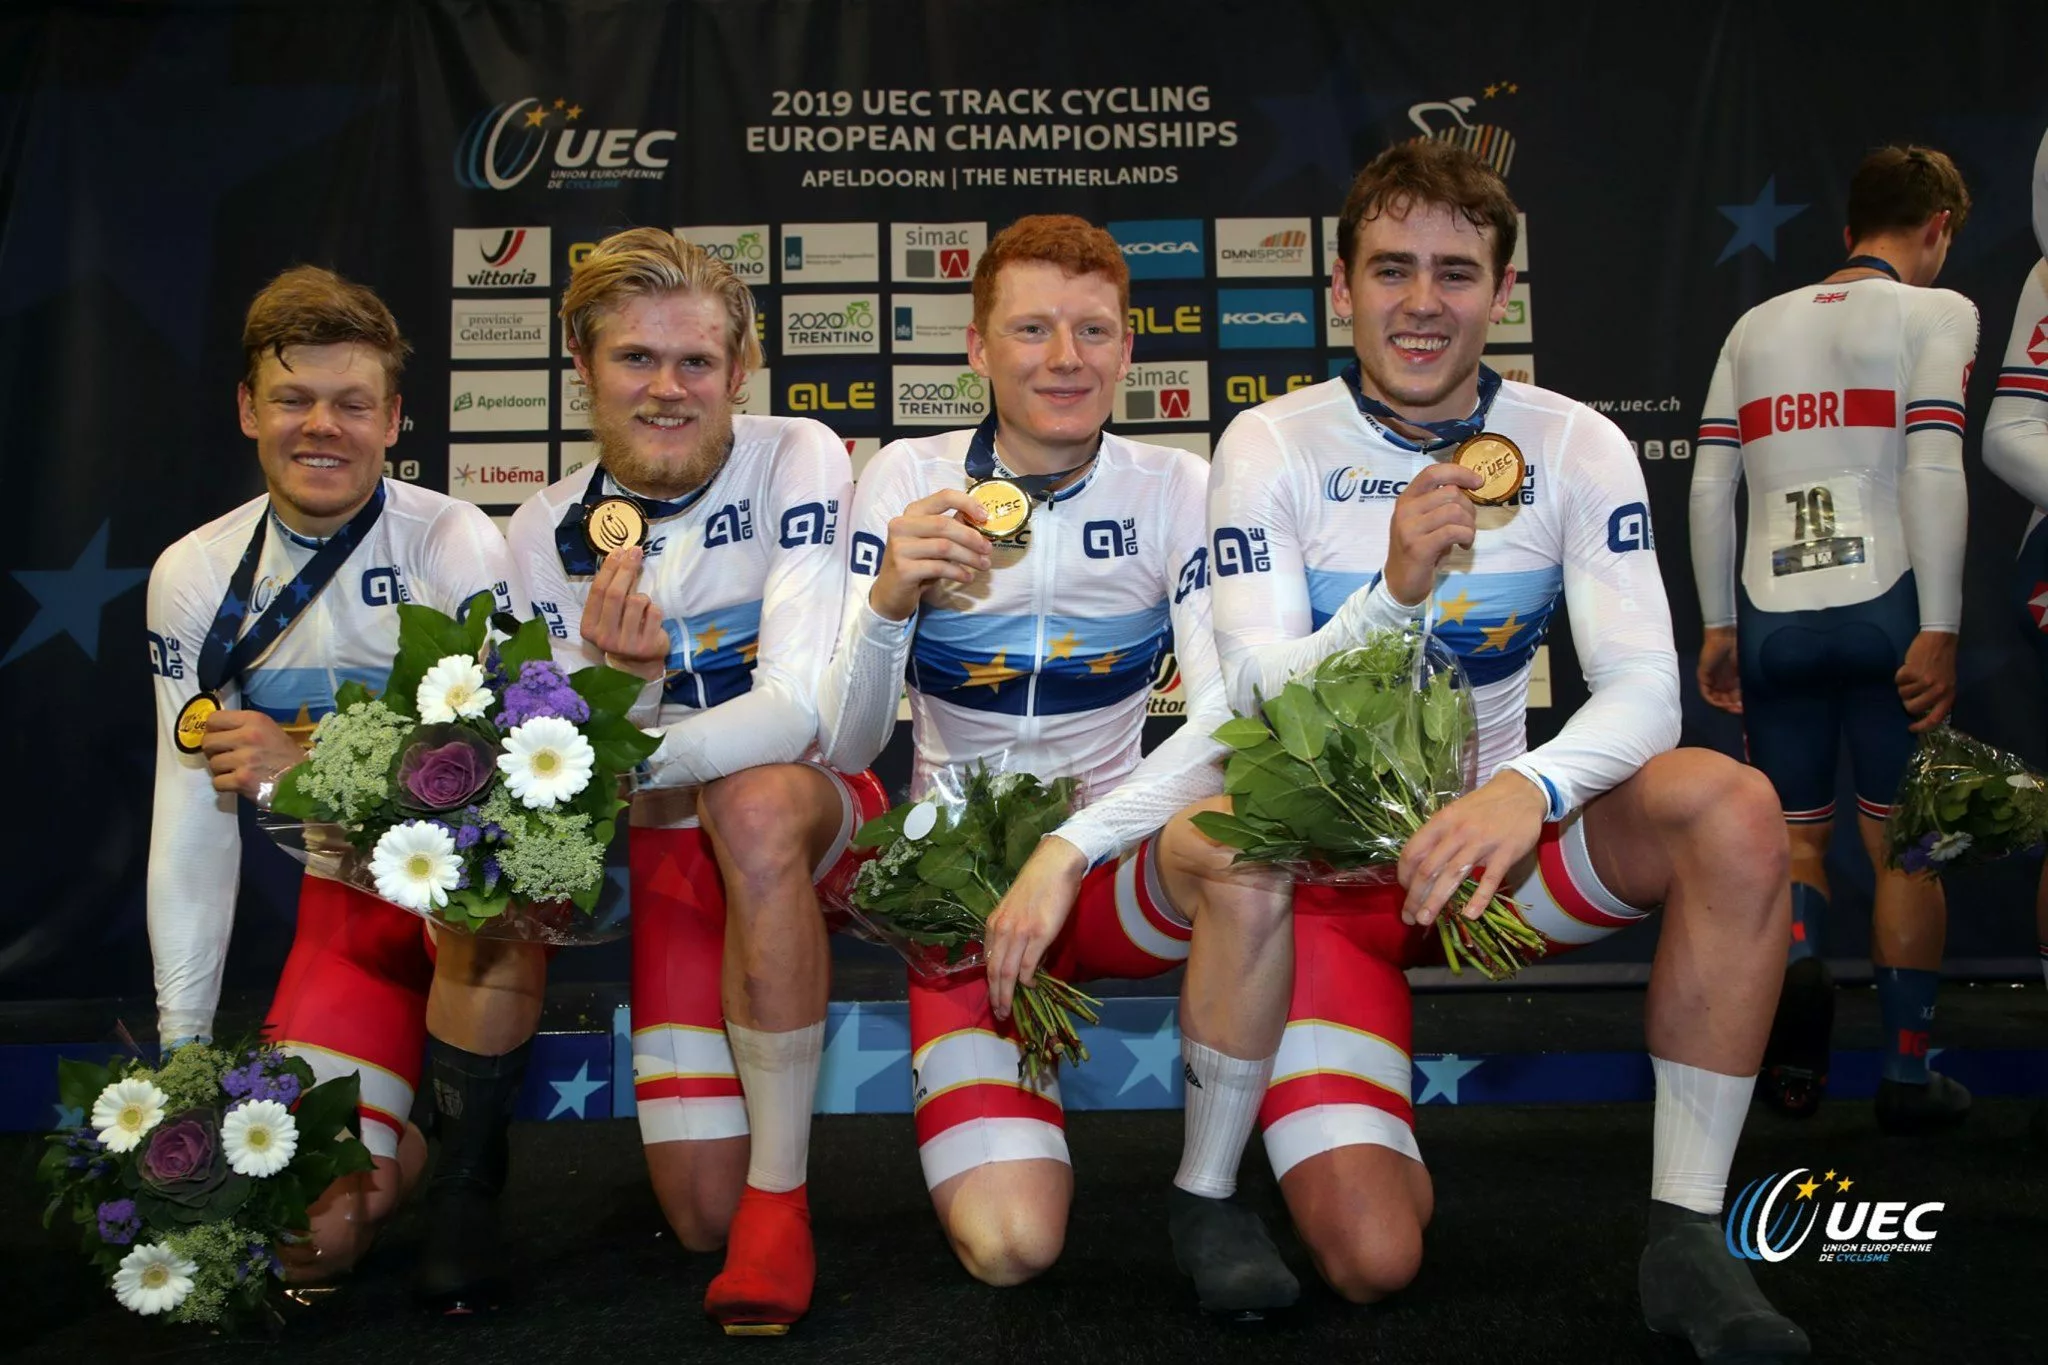 Датчане выиграли командную гонку преследования в Апельдорне